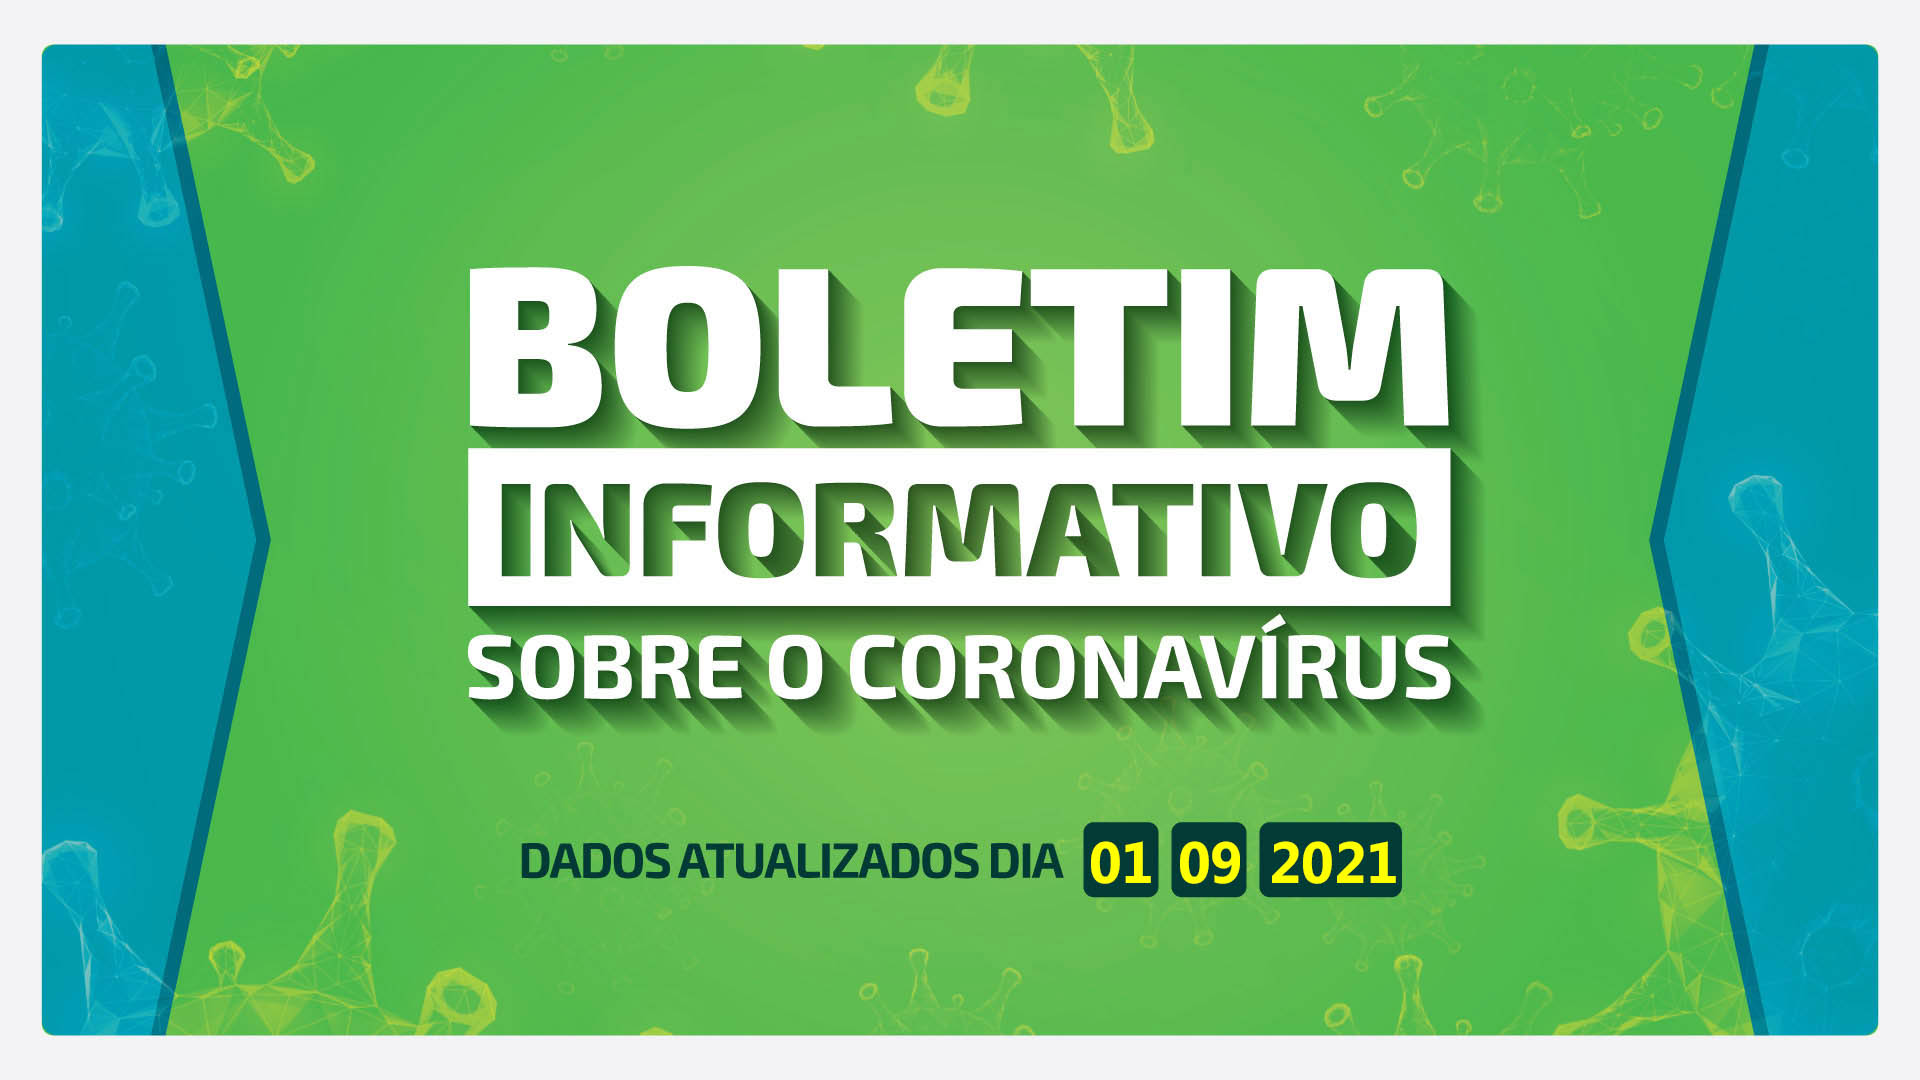 BOLETIM DIÁRIO DA COVID-19 EM BARRA BONITA - 01 DE SETEMBRO DE 2021